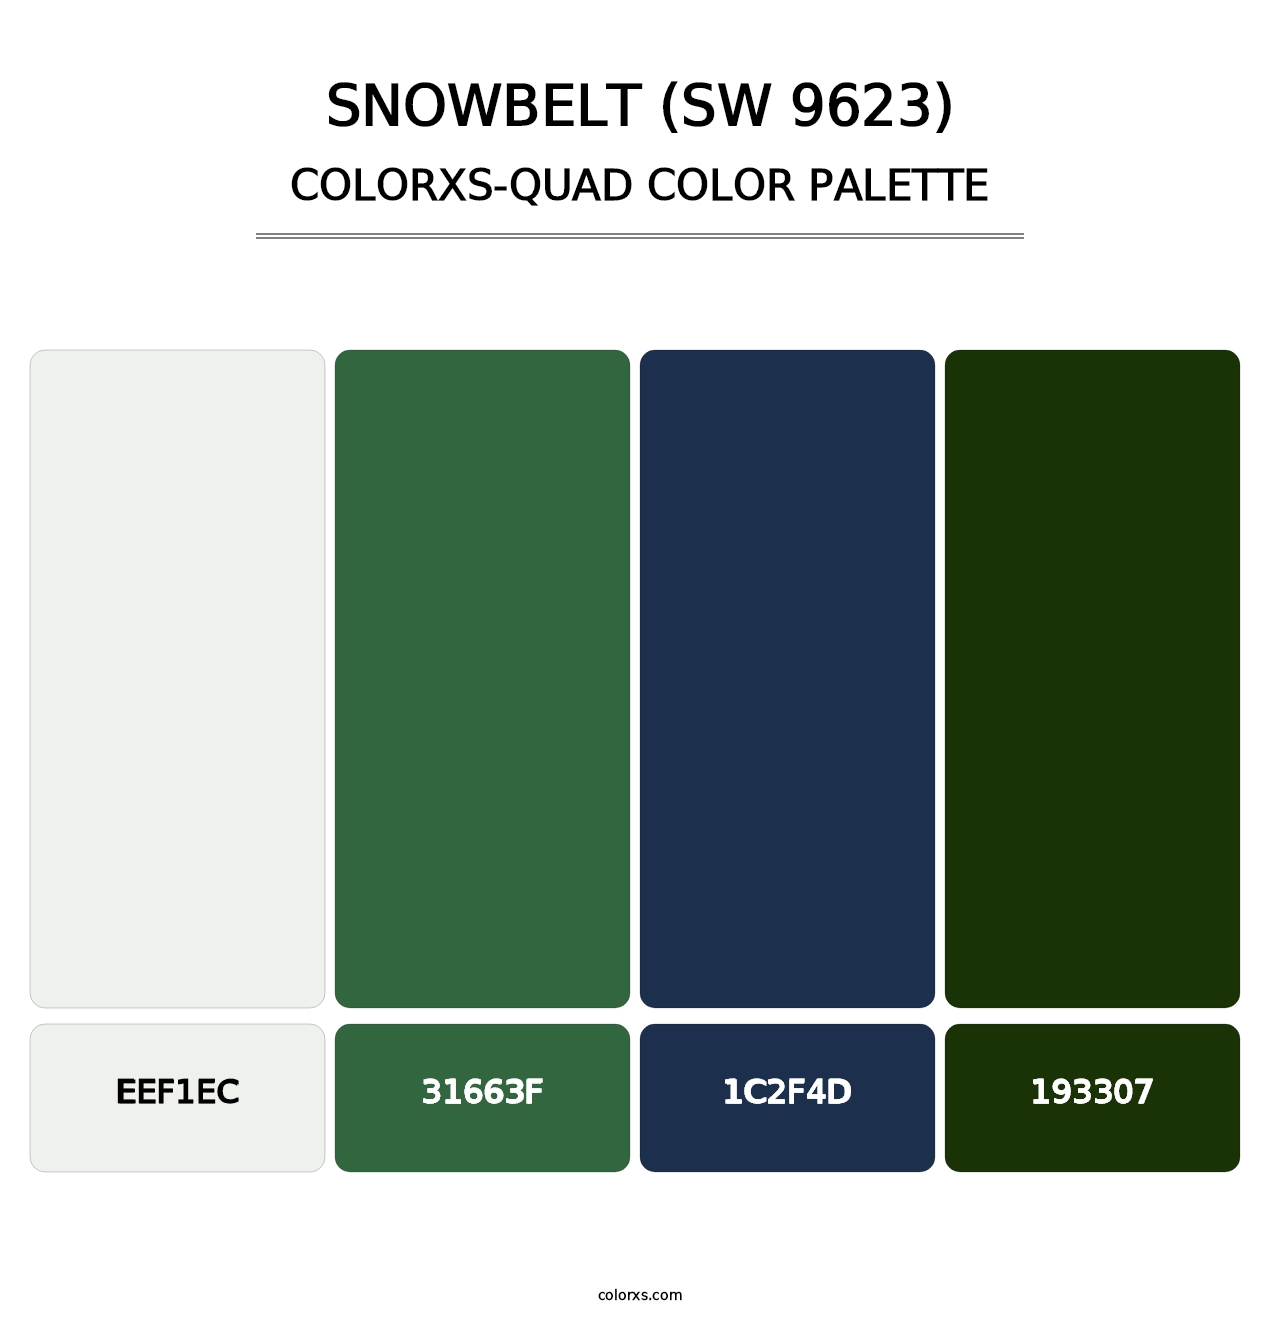 Snowbelt (SW 9623) - Colorxs Quad Palette